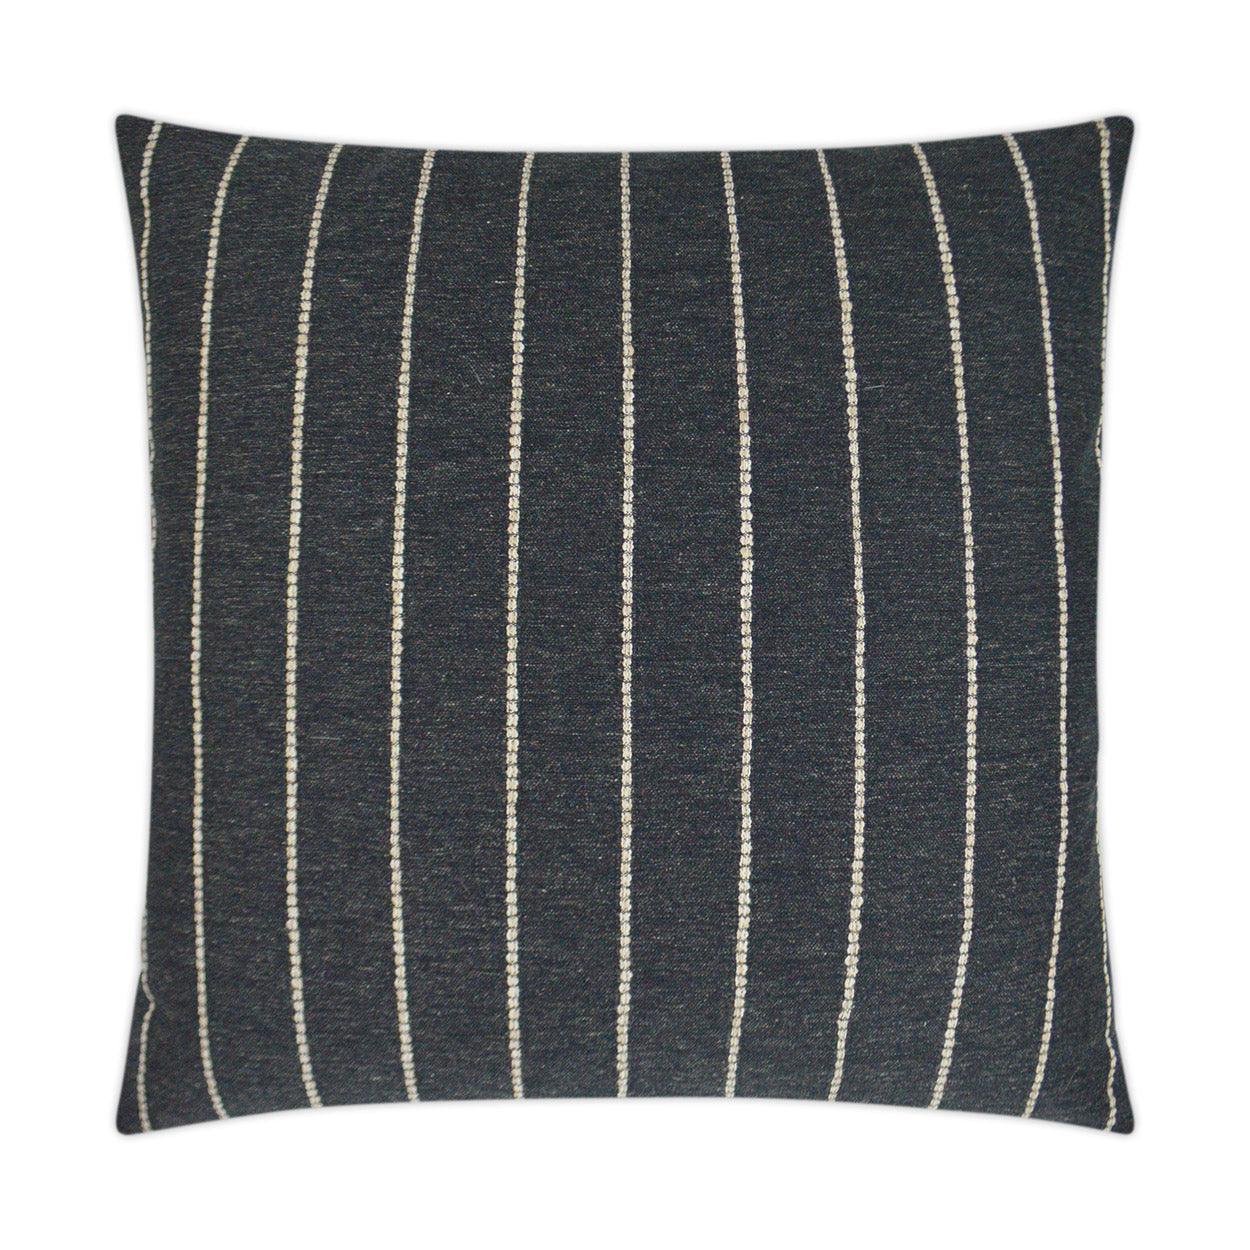 Evie Onyx Farmhouse Stripes Black Large Throw Pillow With Insert - Uptown Sebastian